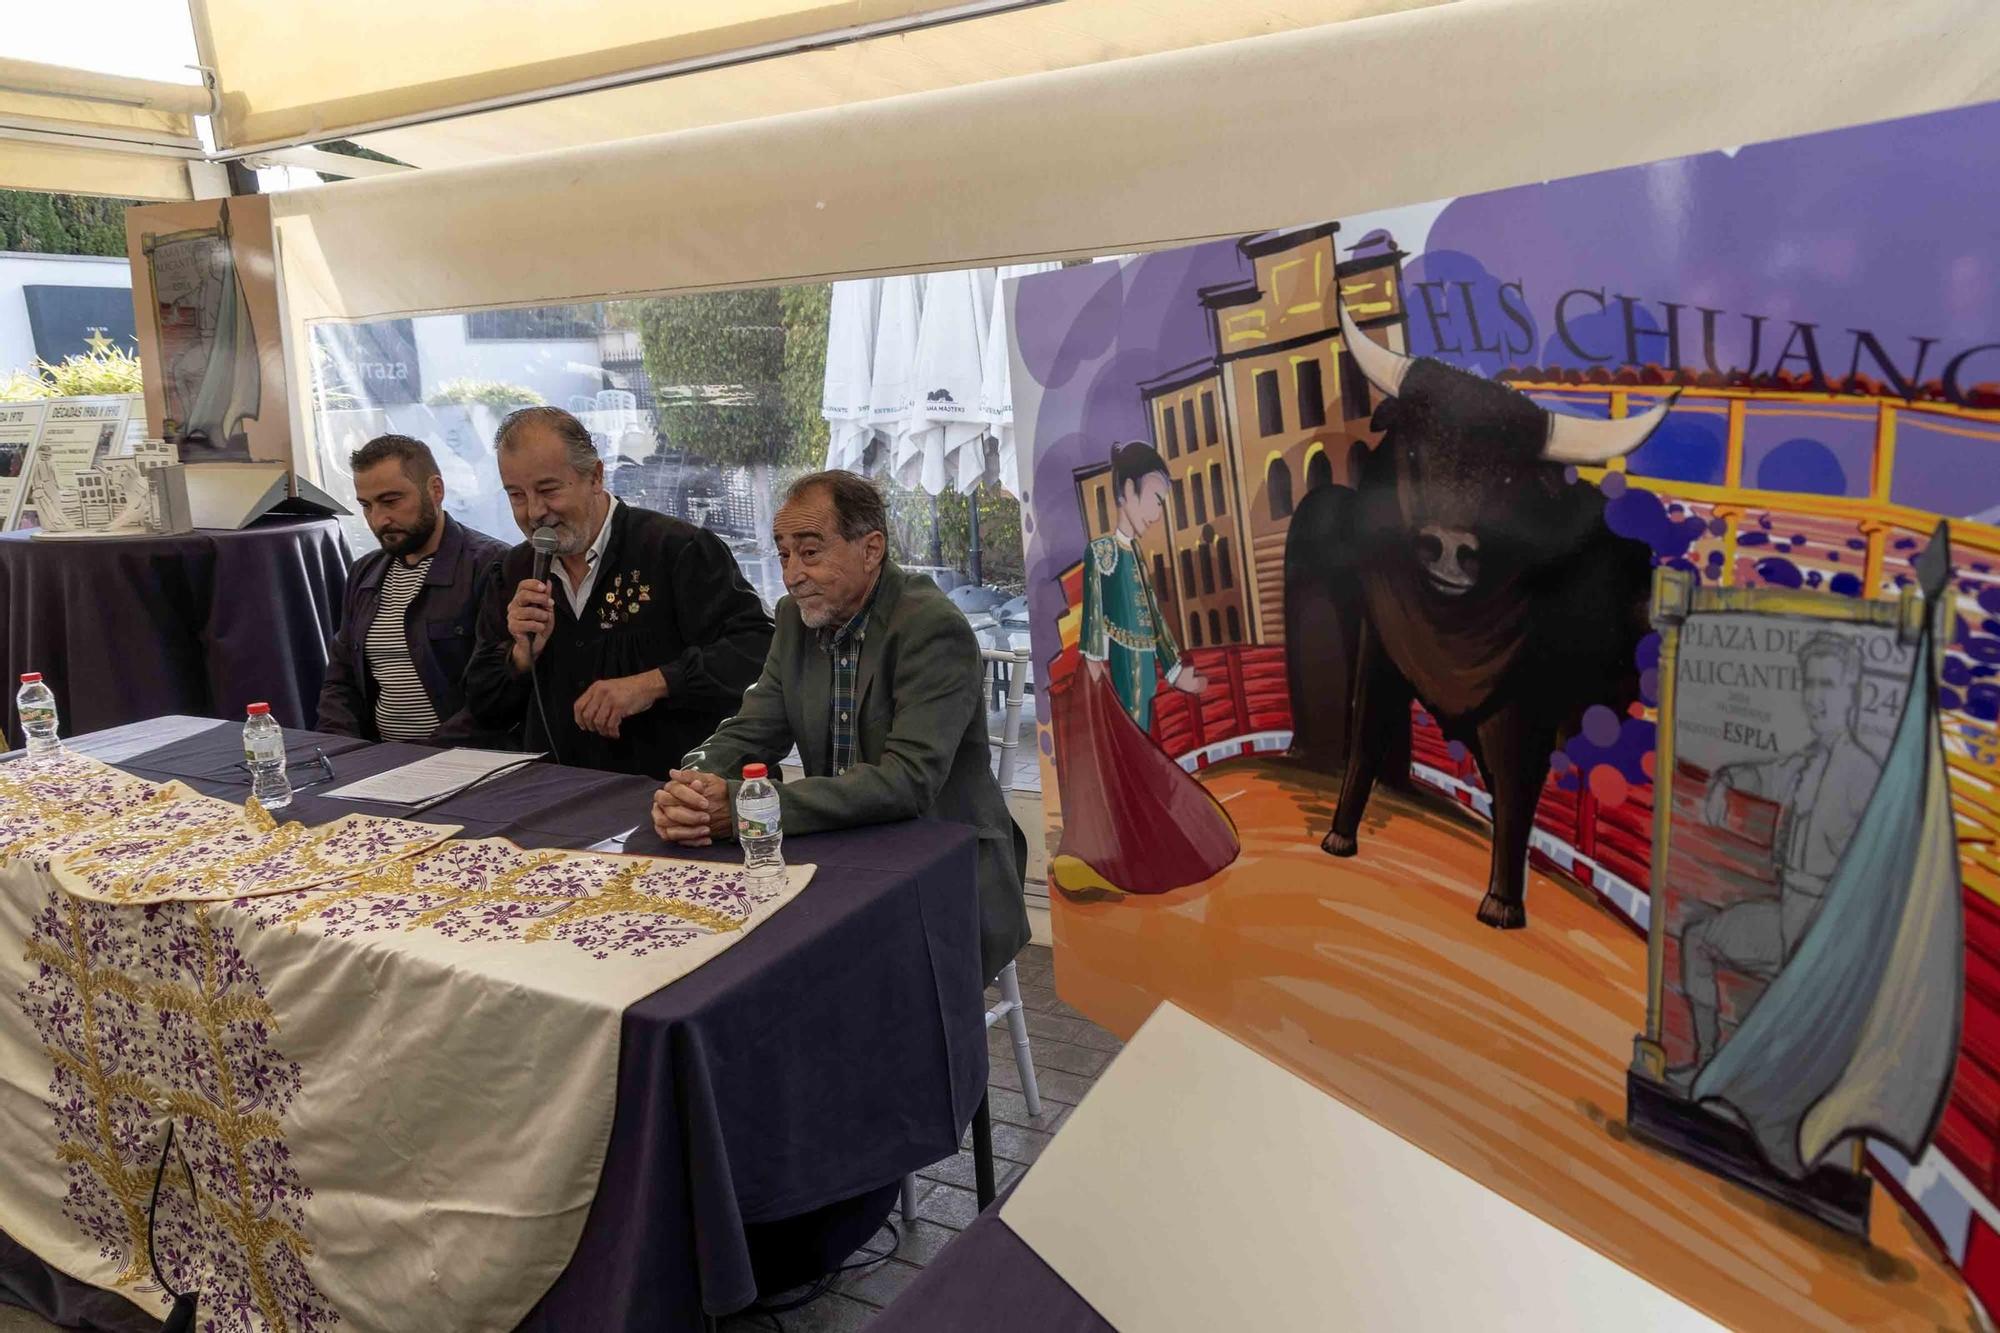 La Barraca 'Els Chuanos' presenta su portada dedicada al torero Paquito Esplá en el centenario de su nacimiento